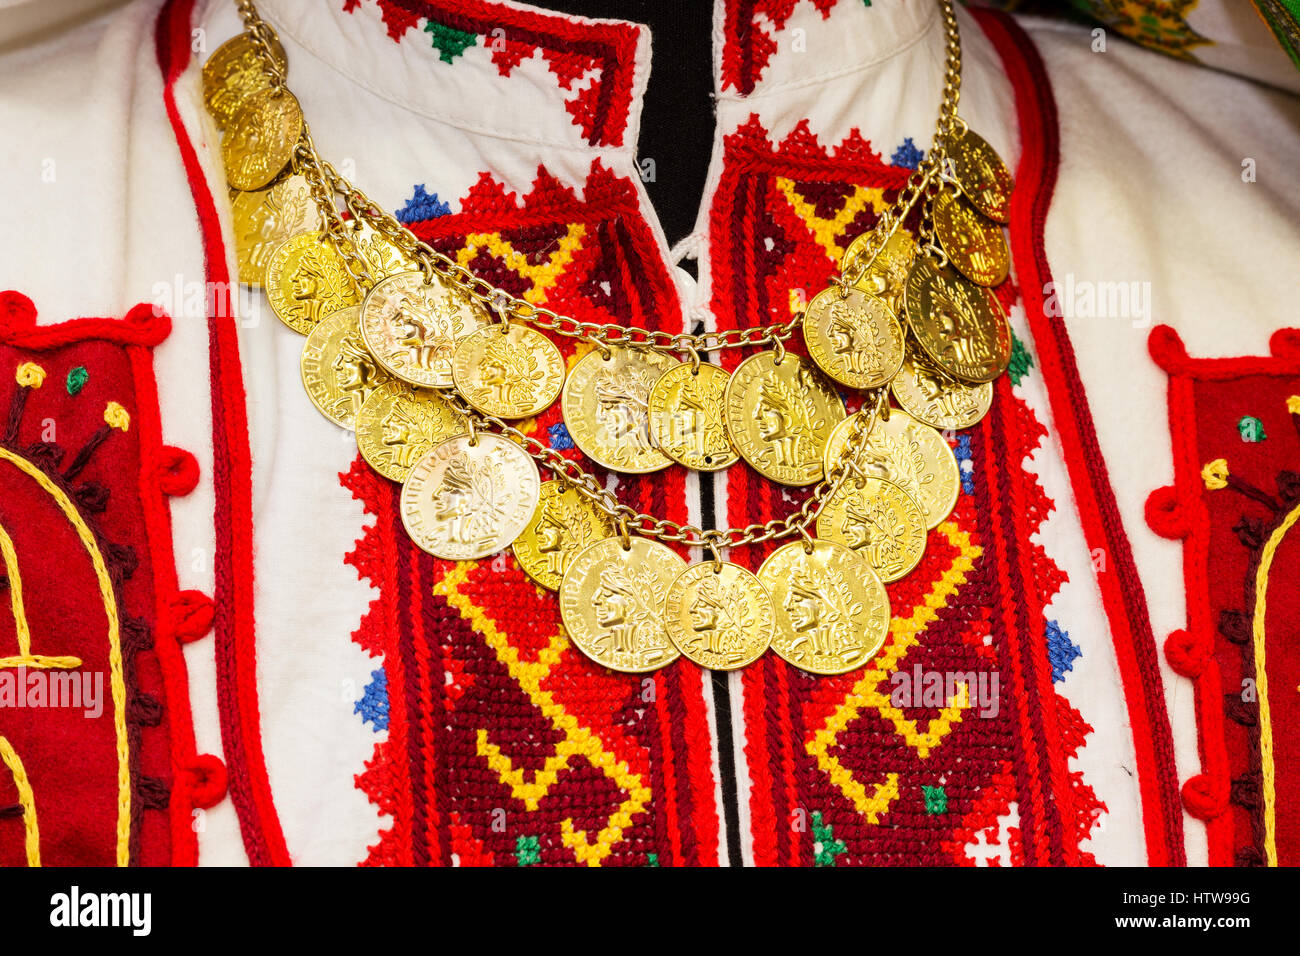 Donna blusa con colorati ricamati a mano con abbellito con una collana di monete d'oro. Artigianato tradizionale della Bulgaria, dell'Europa orientale Foto Stock